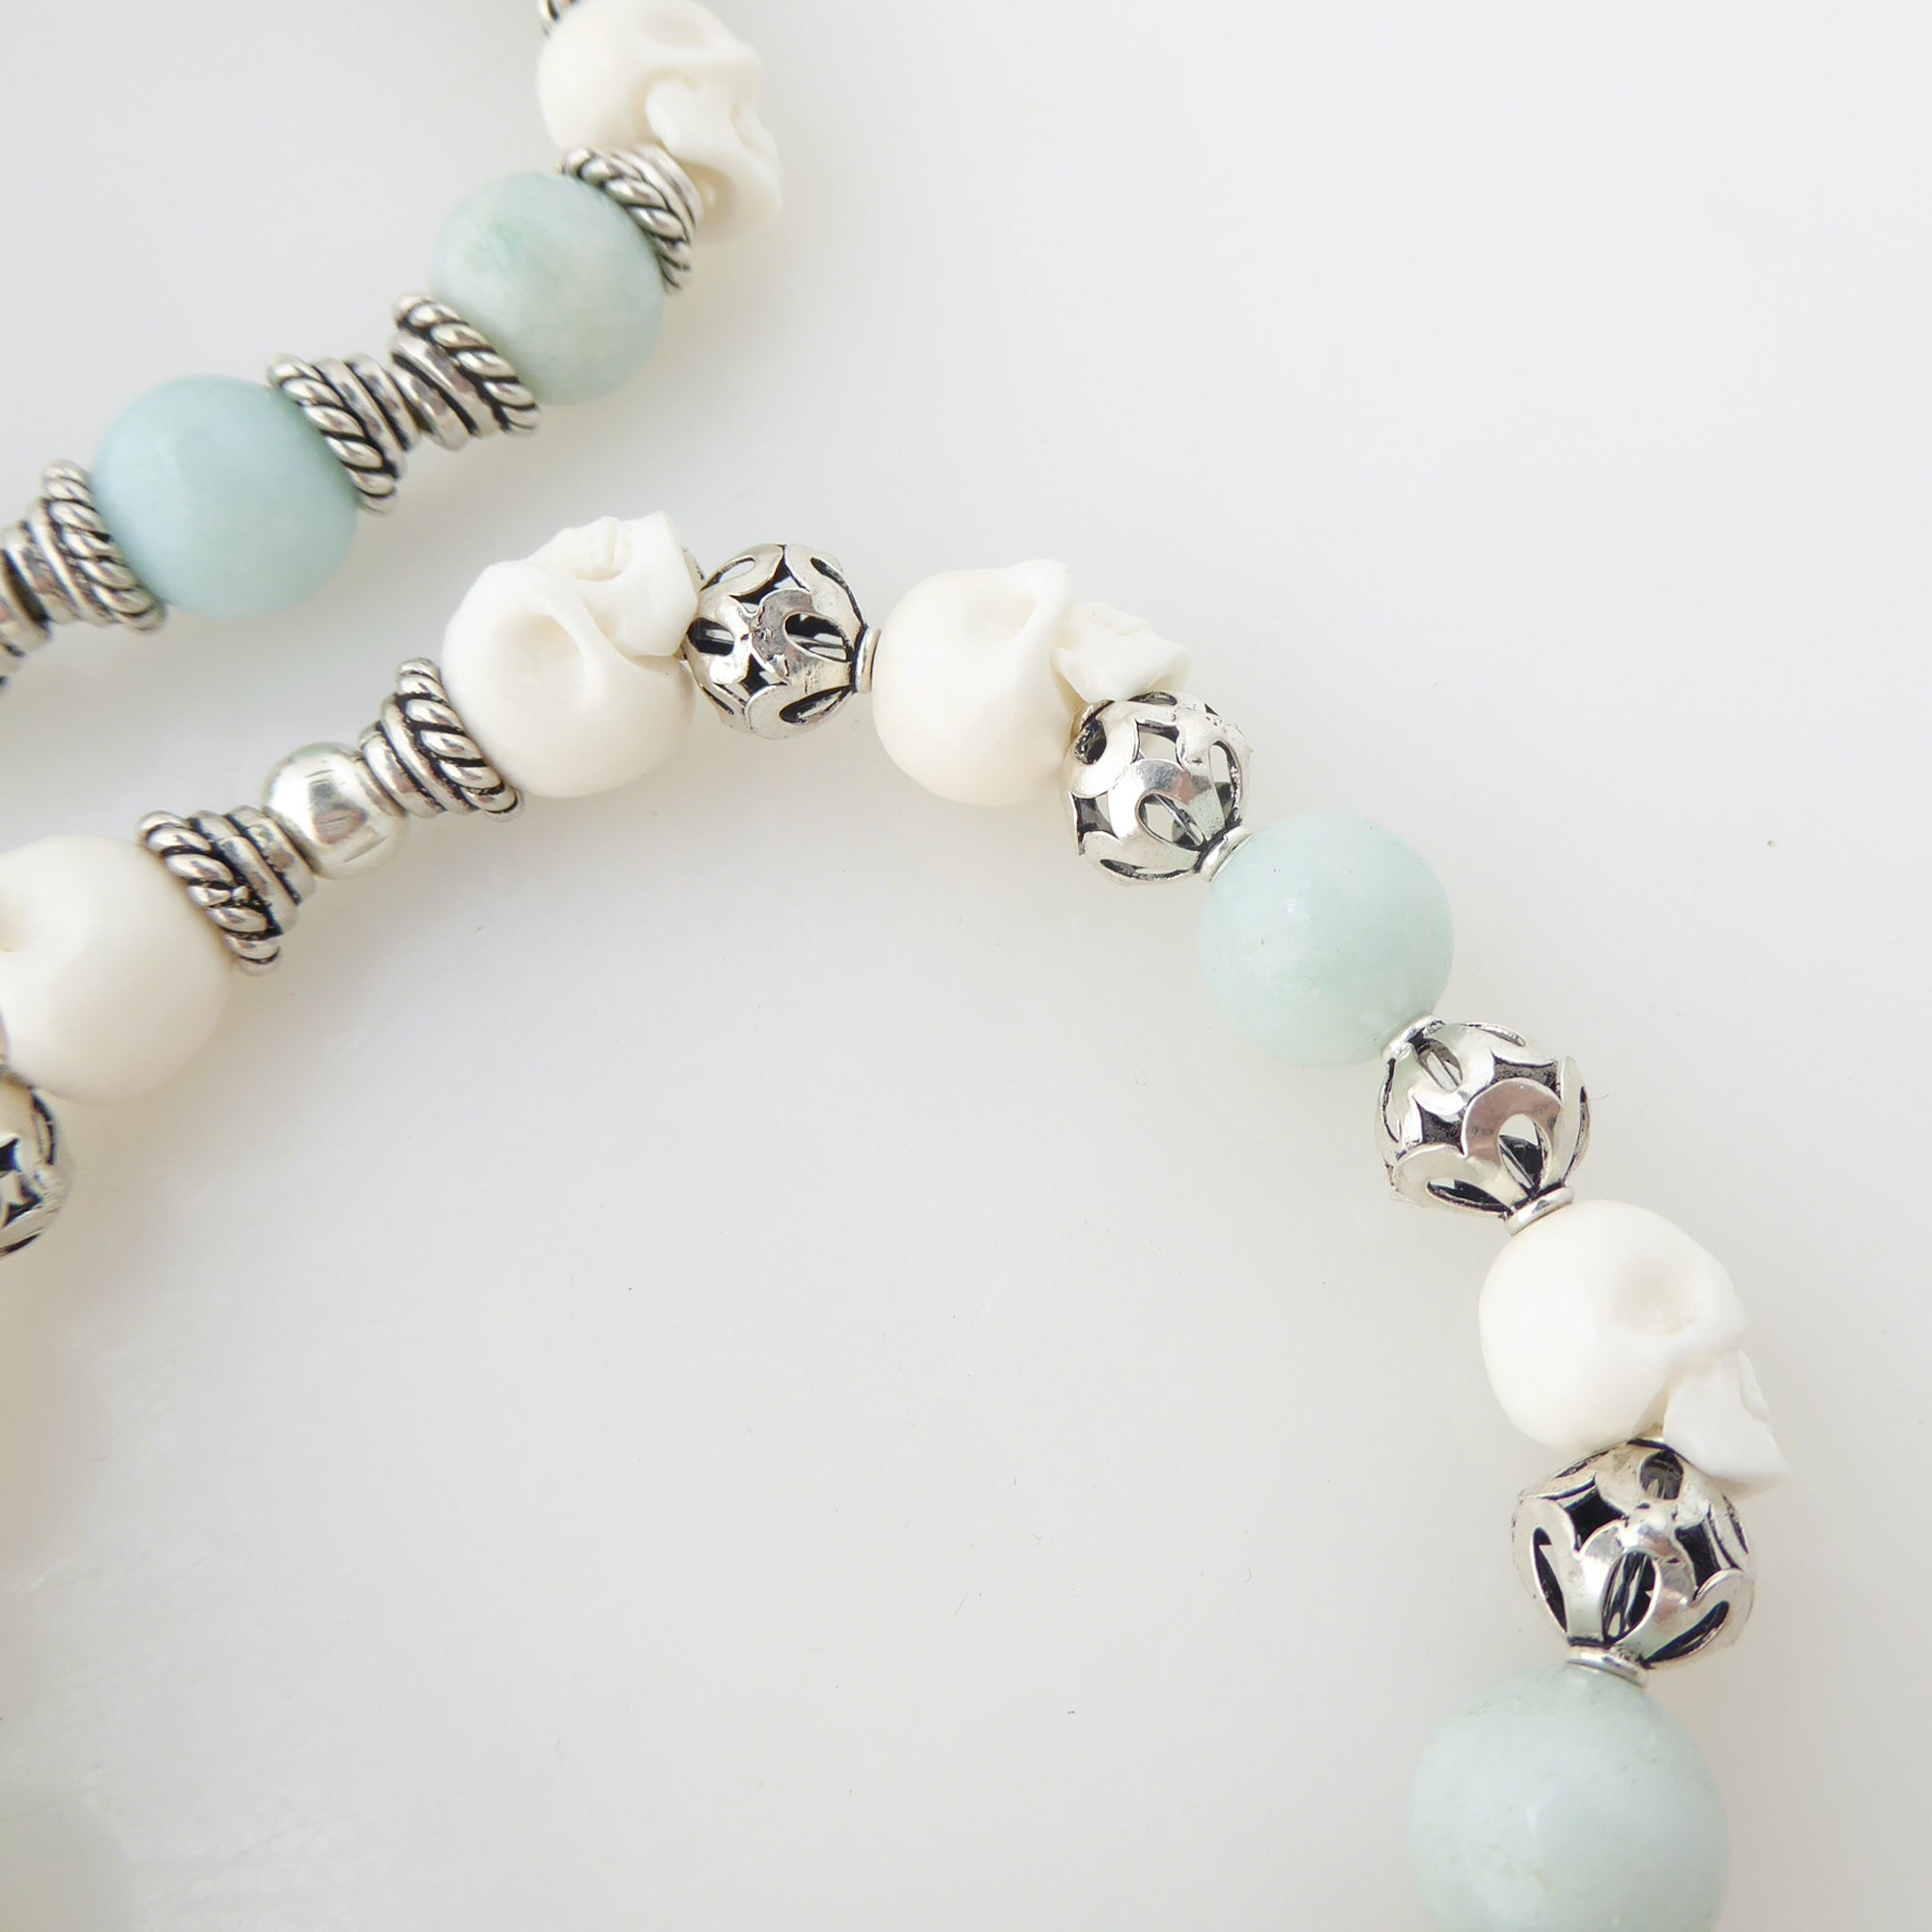 Jade and skull bracelet set by Jenny Dayco 7